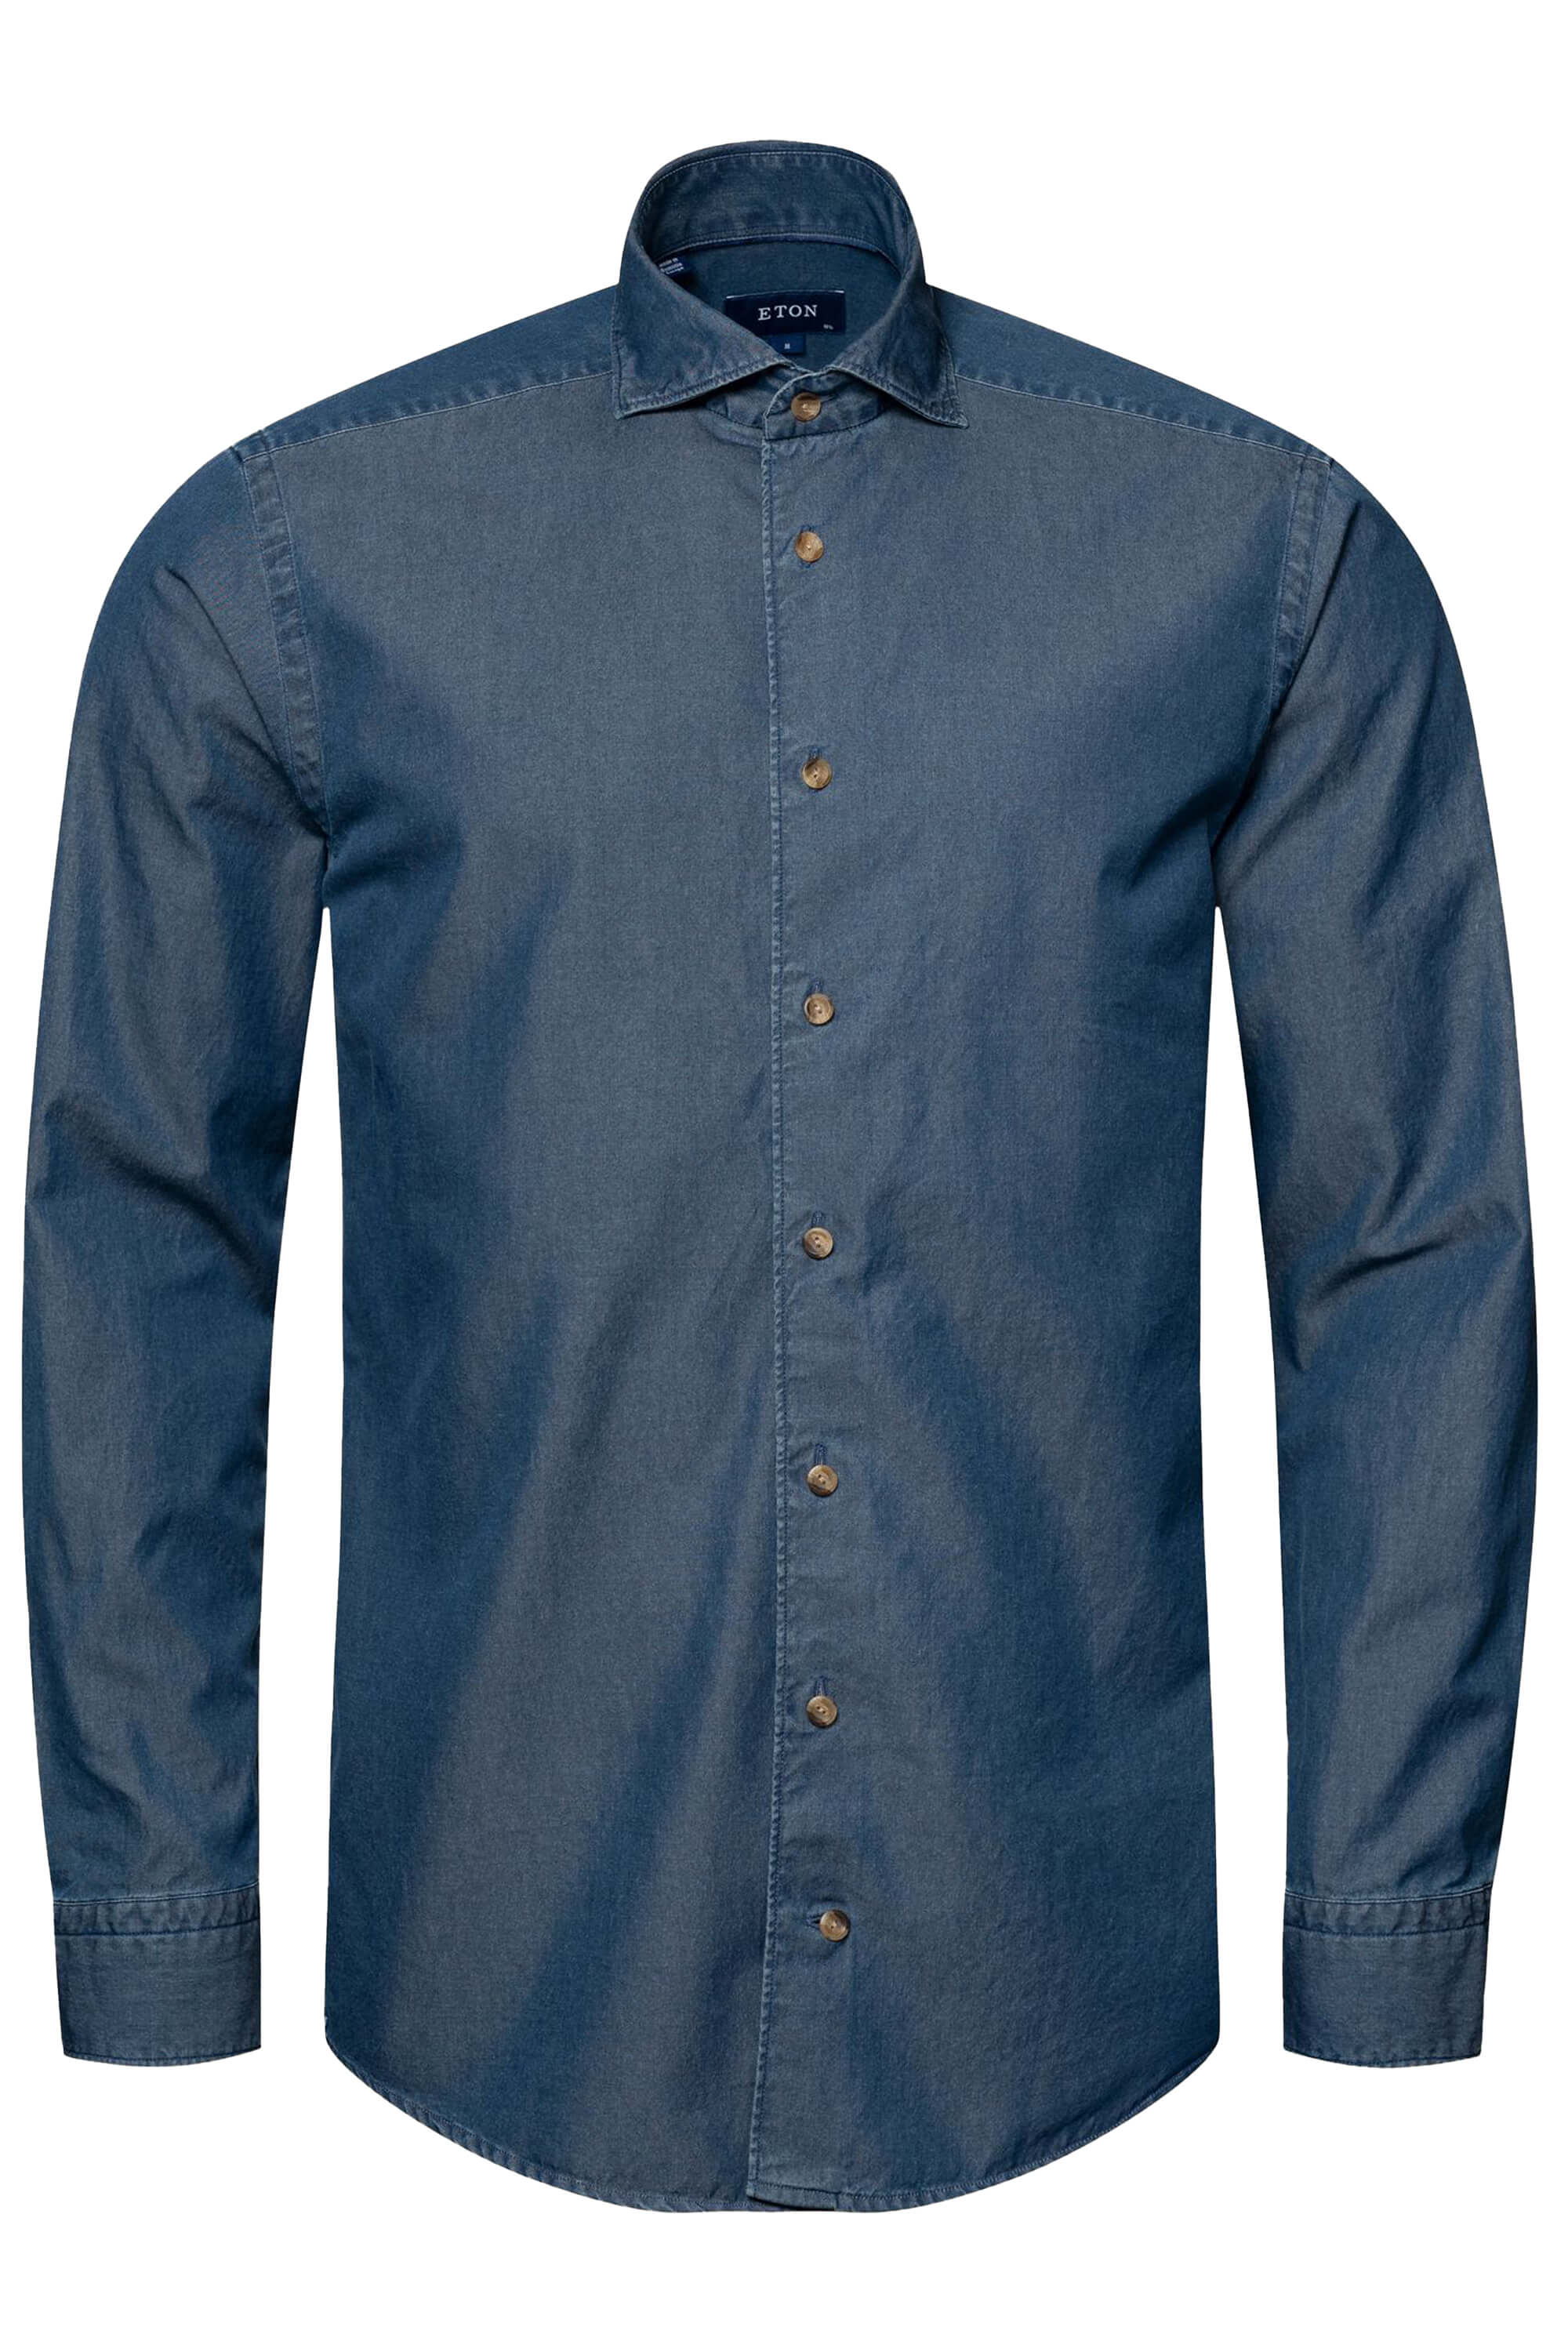 Eton Dark Blue Denim Shirt